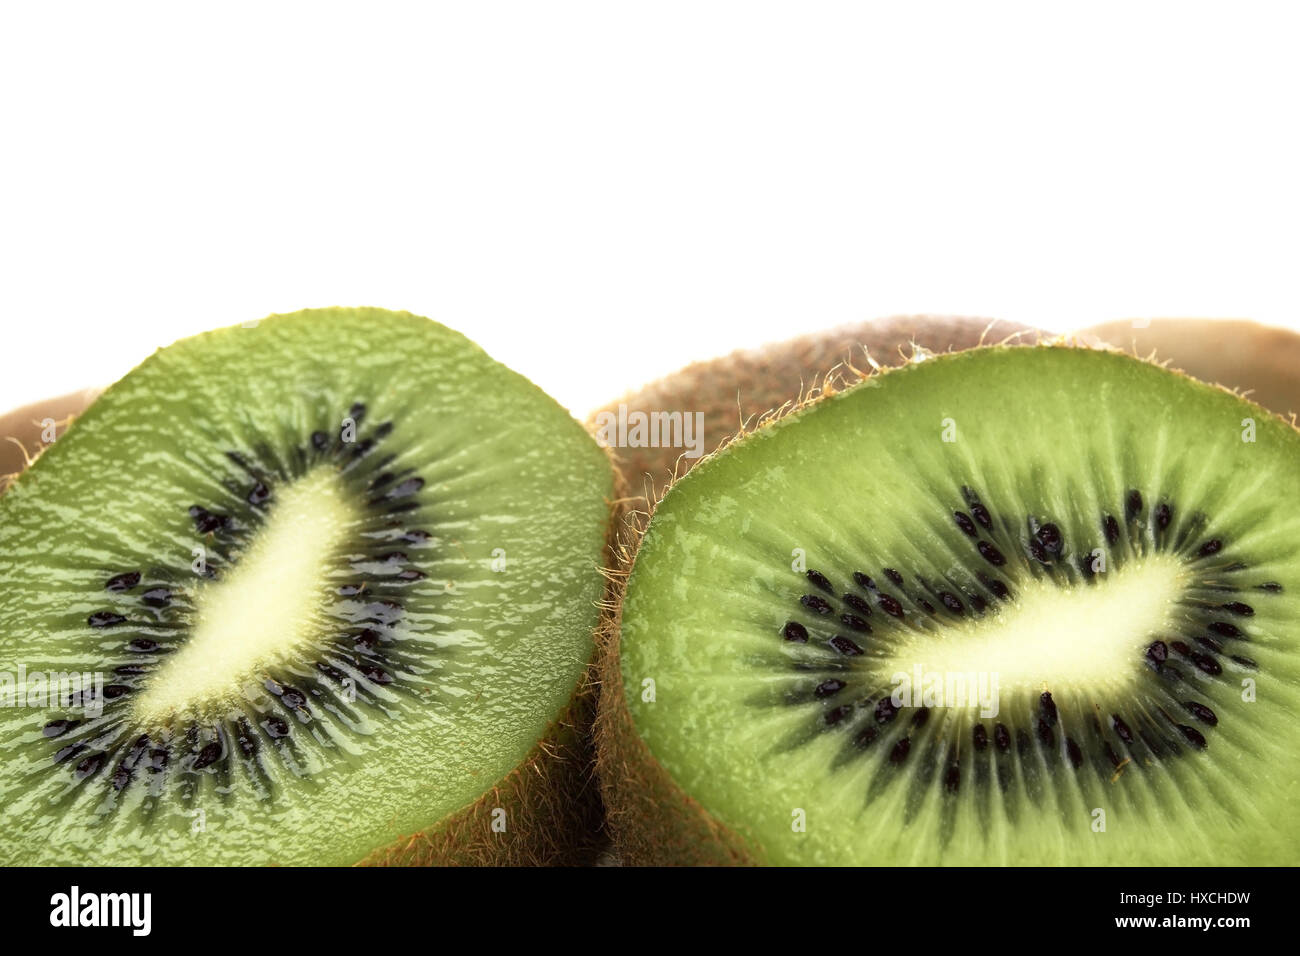 Cut open kiwi fruits, Aufgeschnittene Kiwi-Fruechte Stock Photo